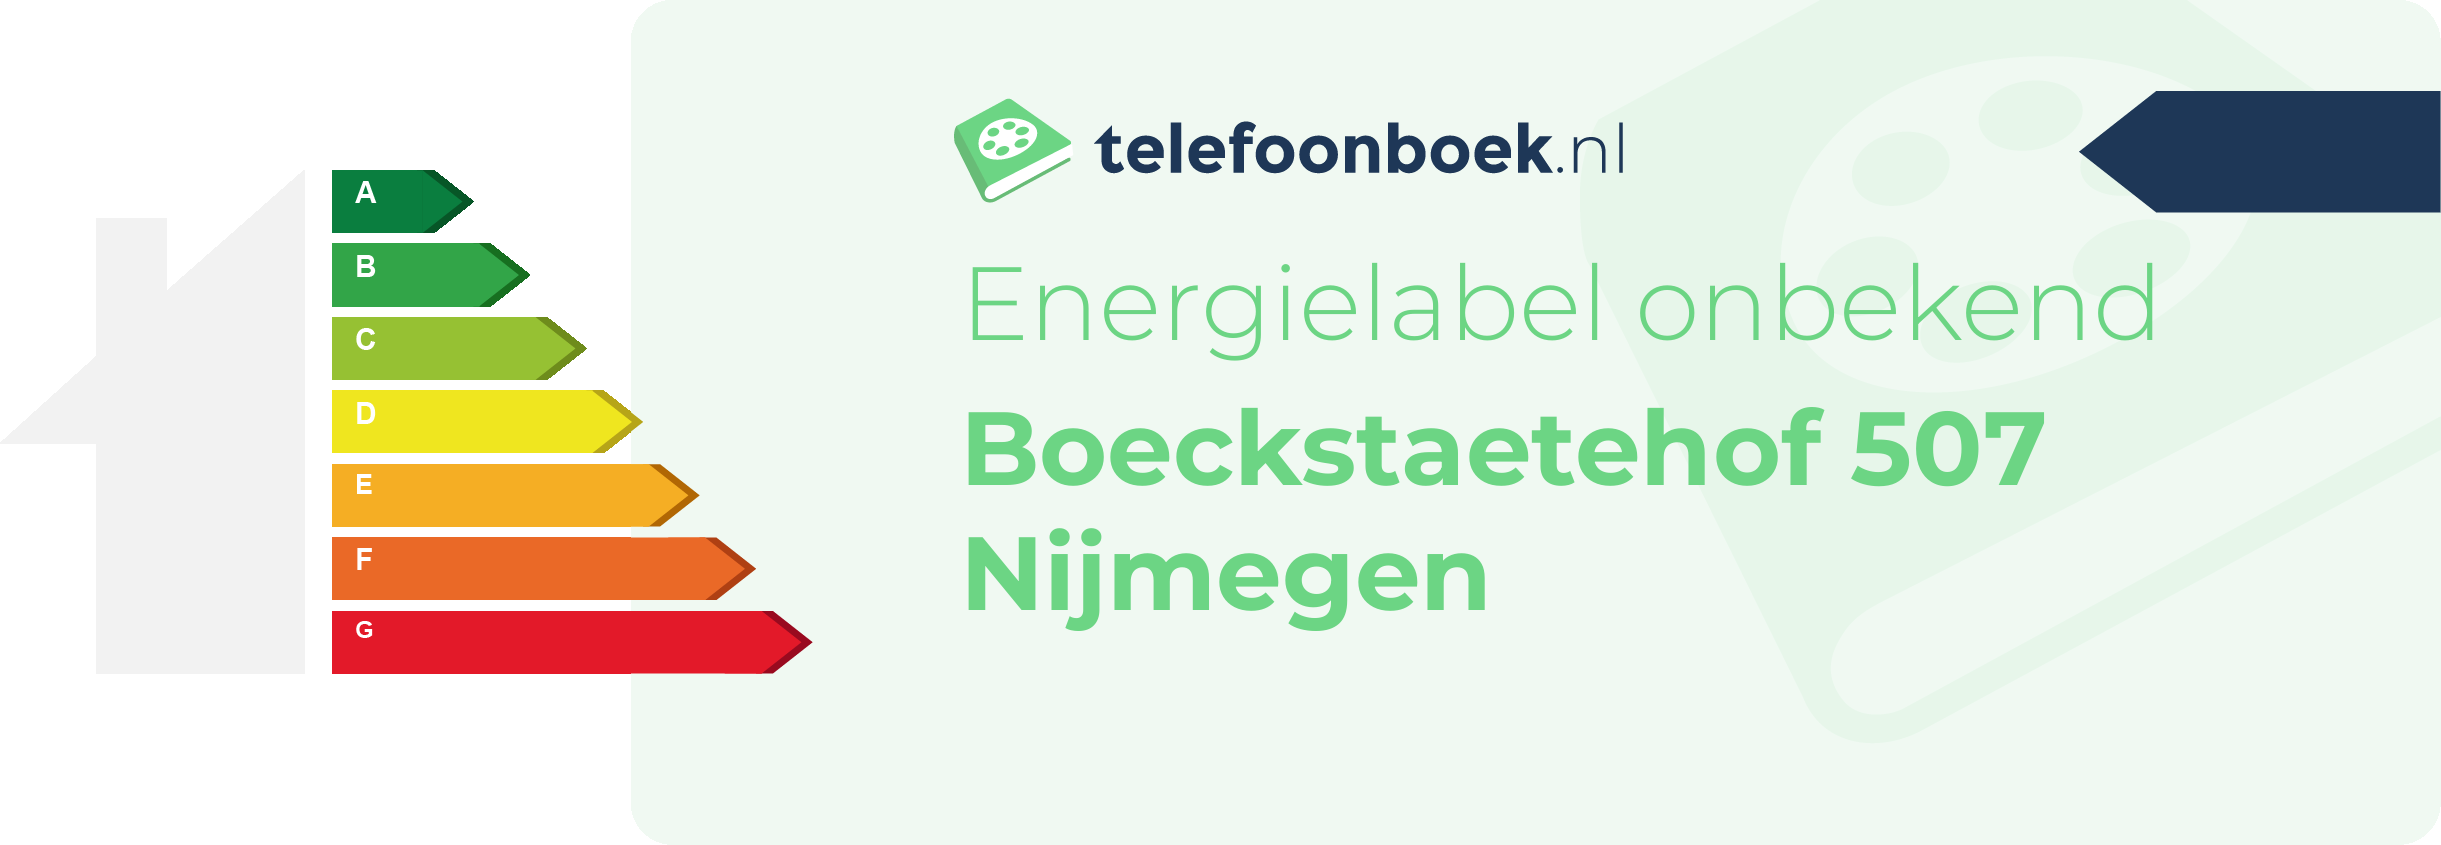 Energielabel Boeckstaetehof 507 Nijmegen